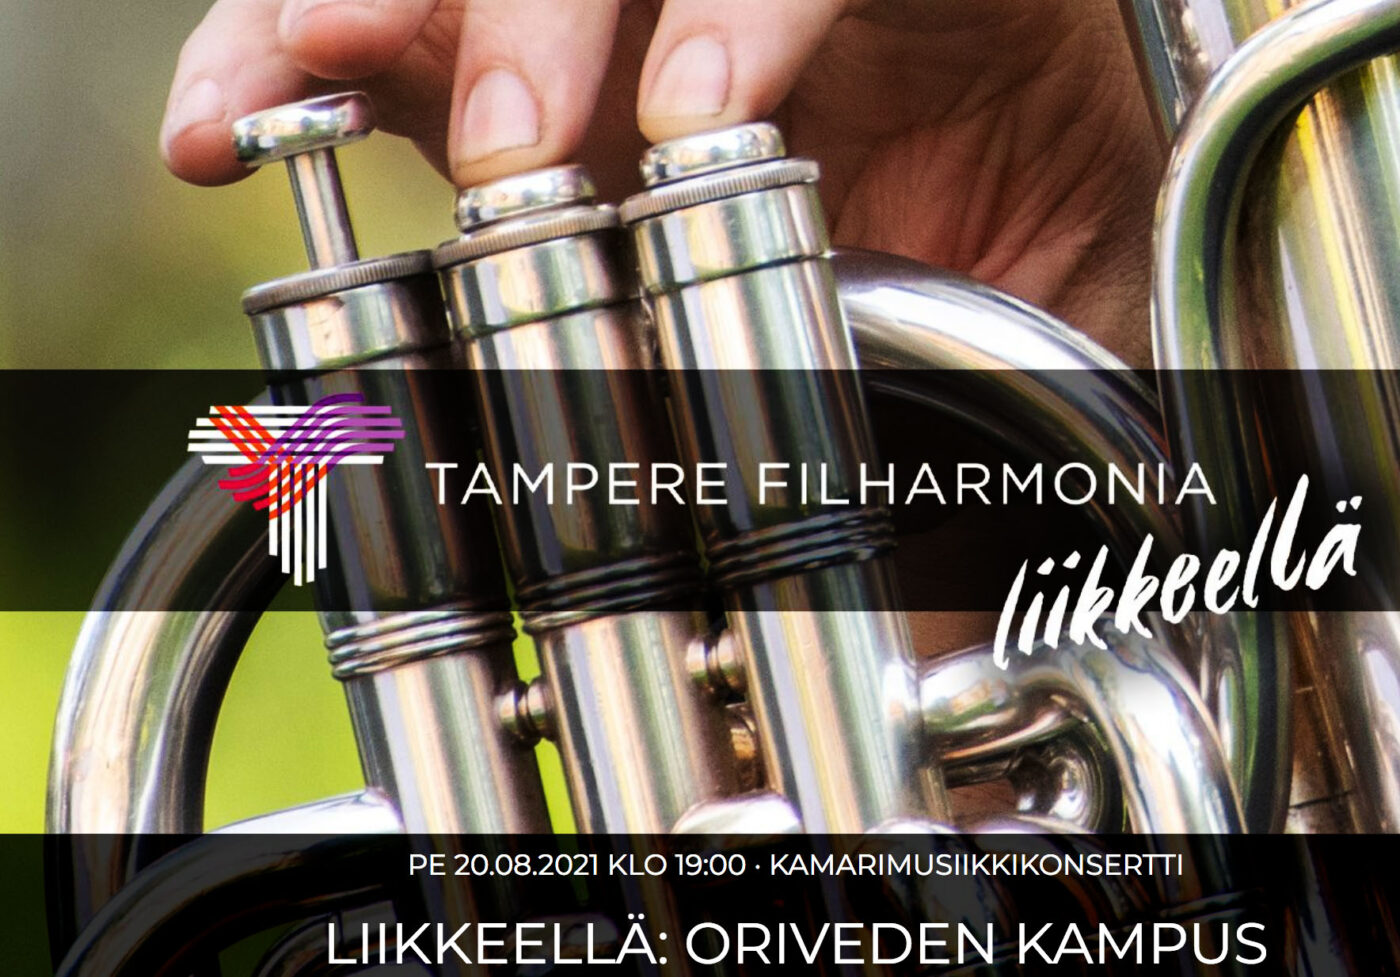 Oriveden Kampus Tampere filharmonia - liikkeellä 2021